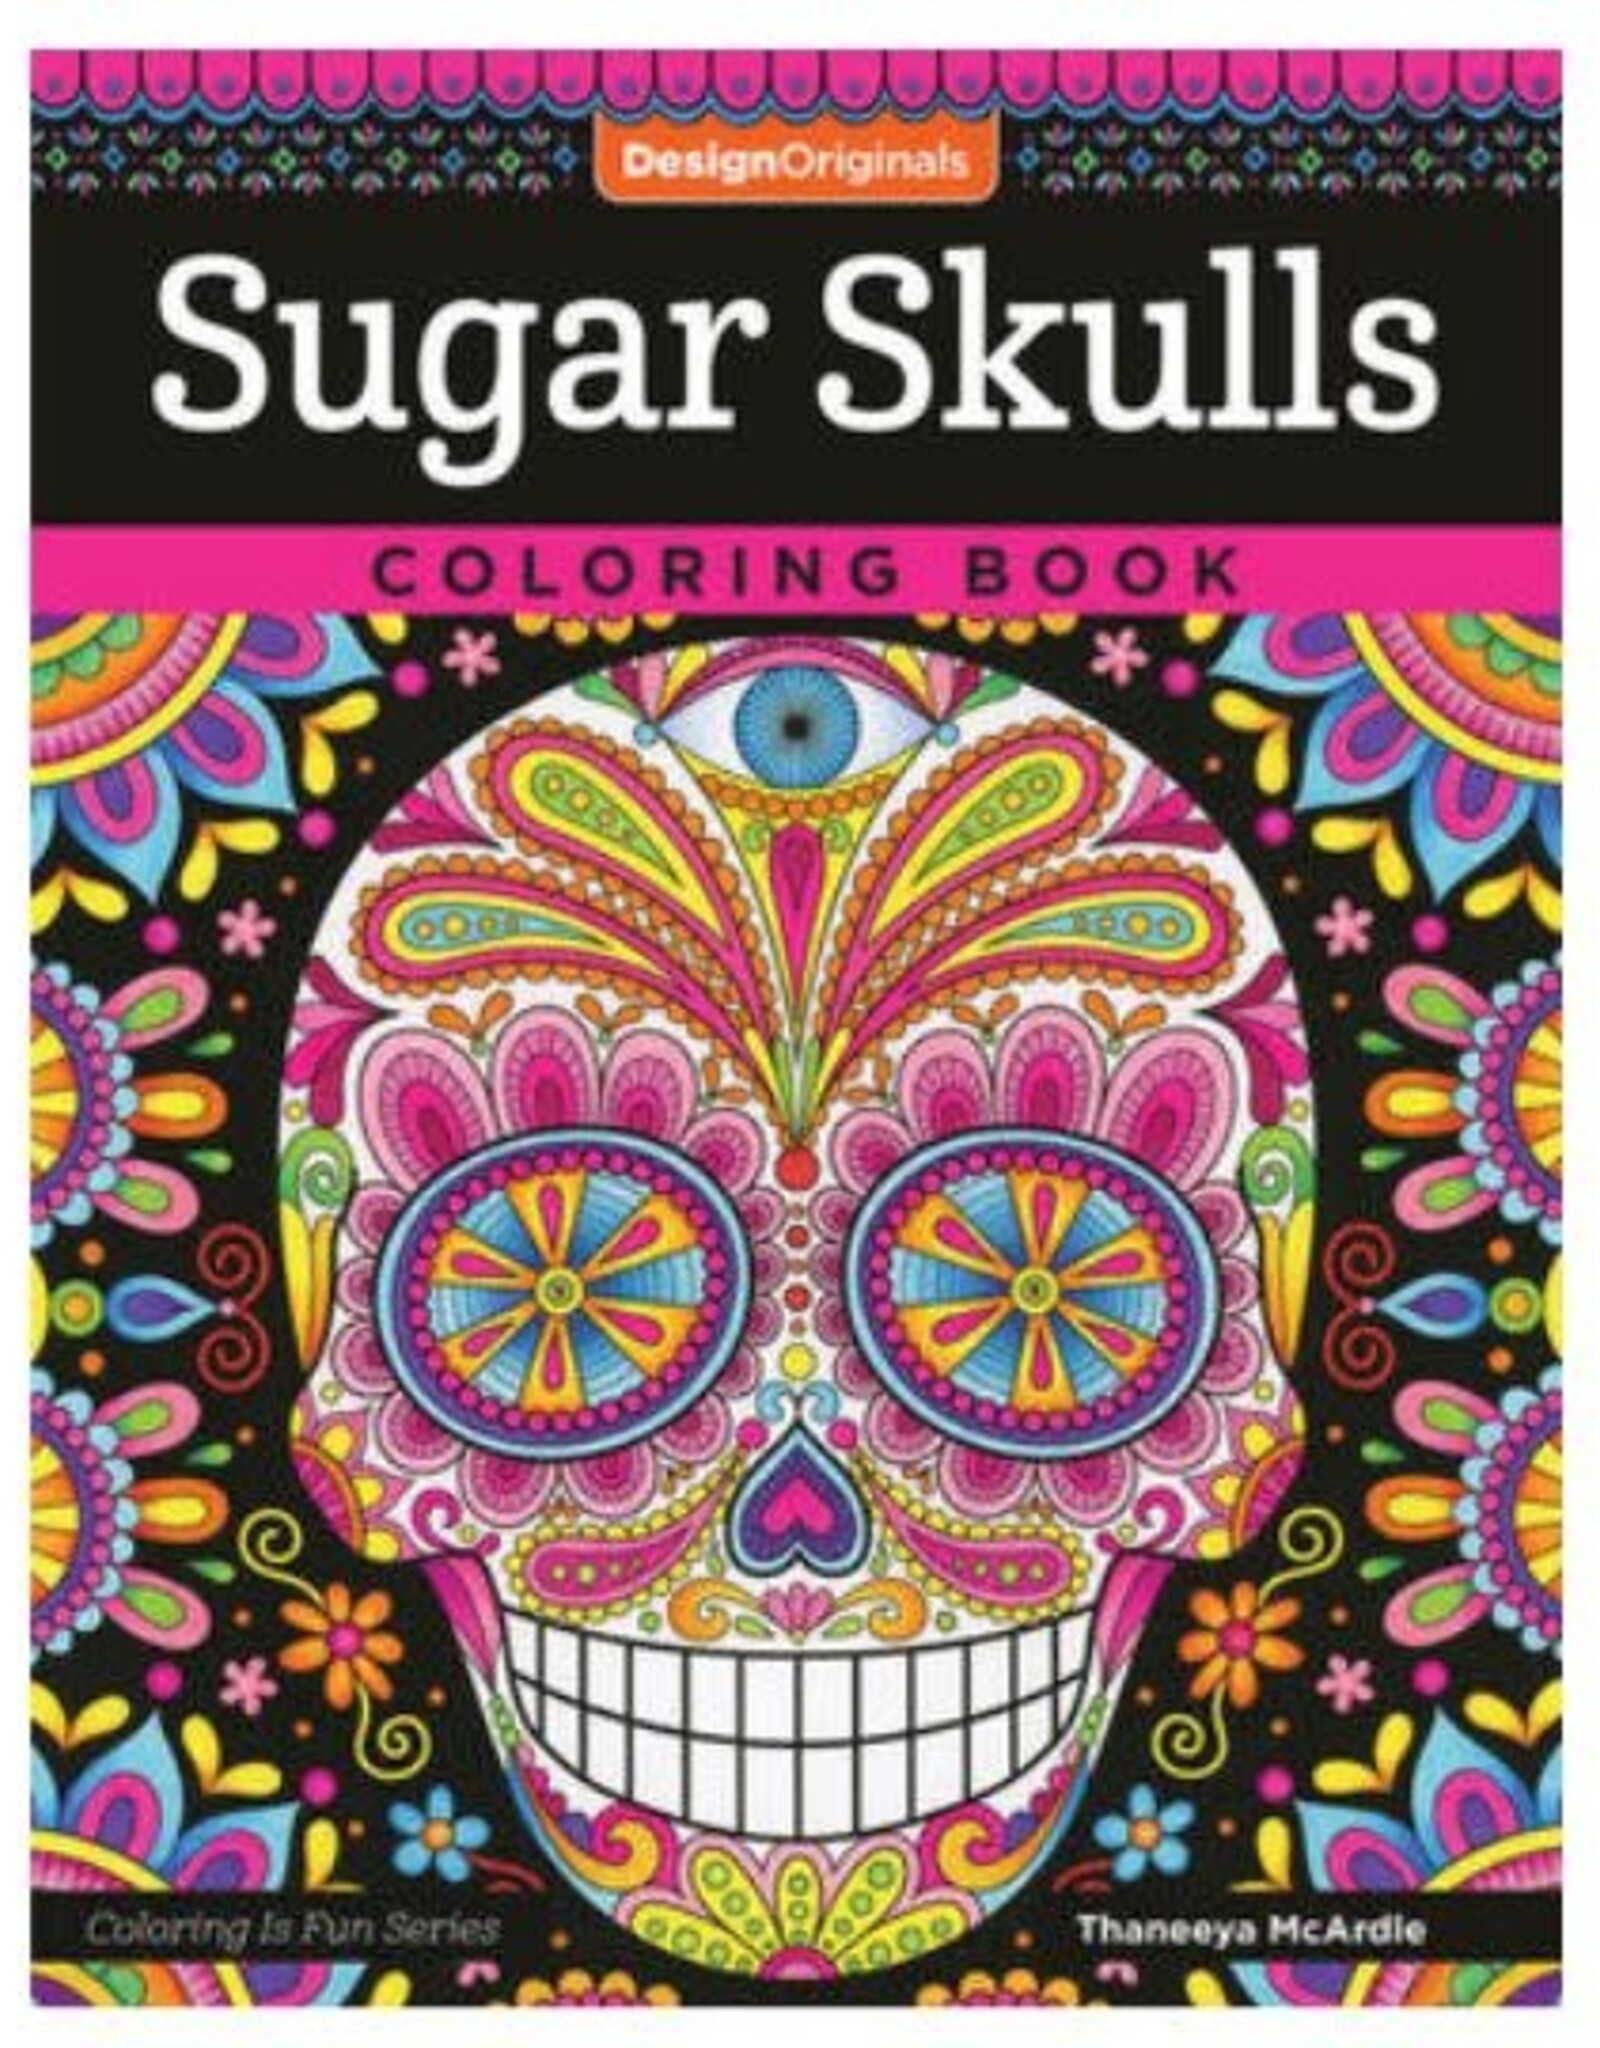 Design Originals Sugar Skulls Coloring Book